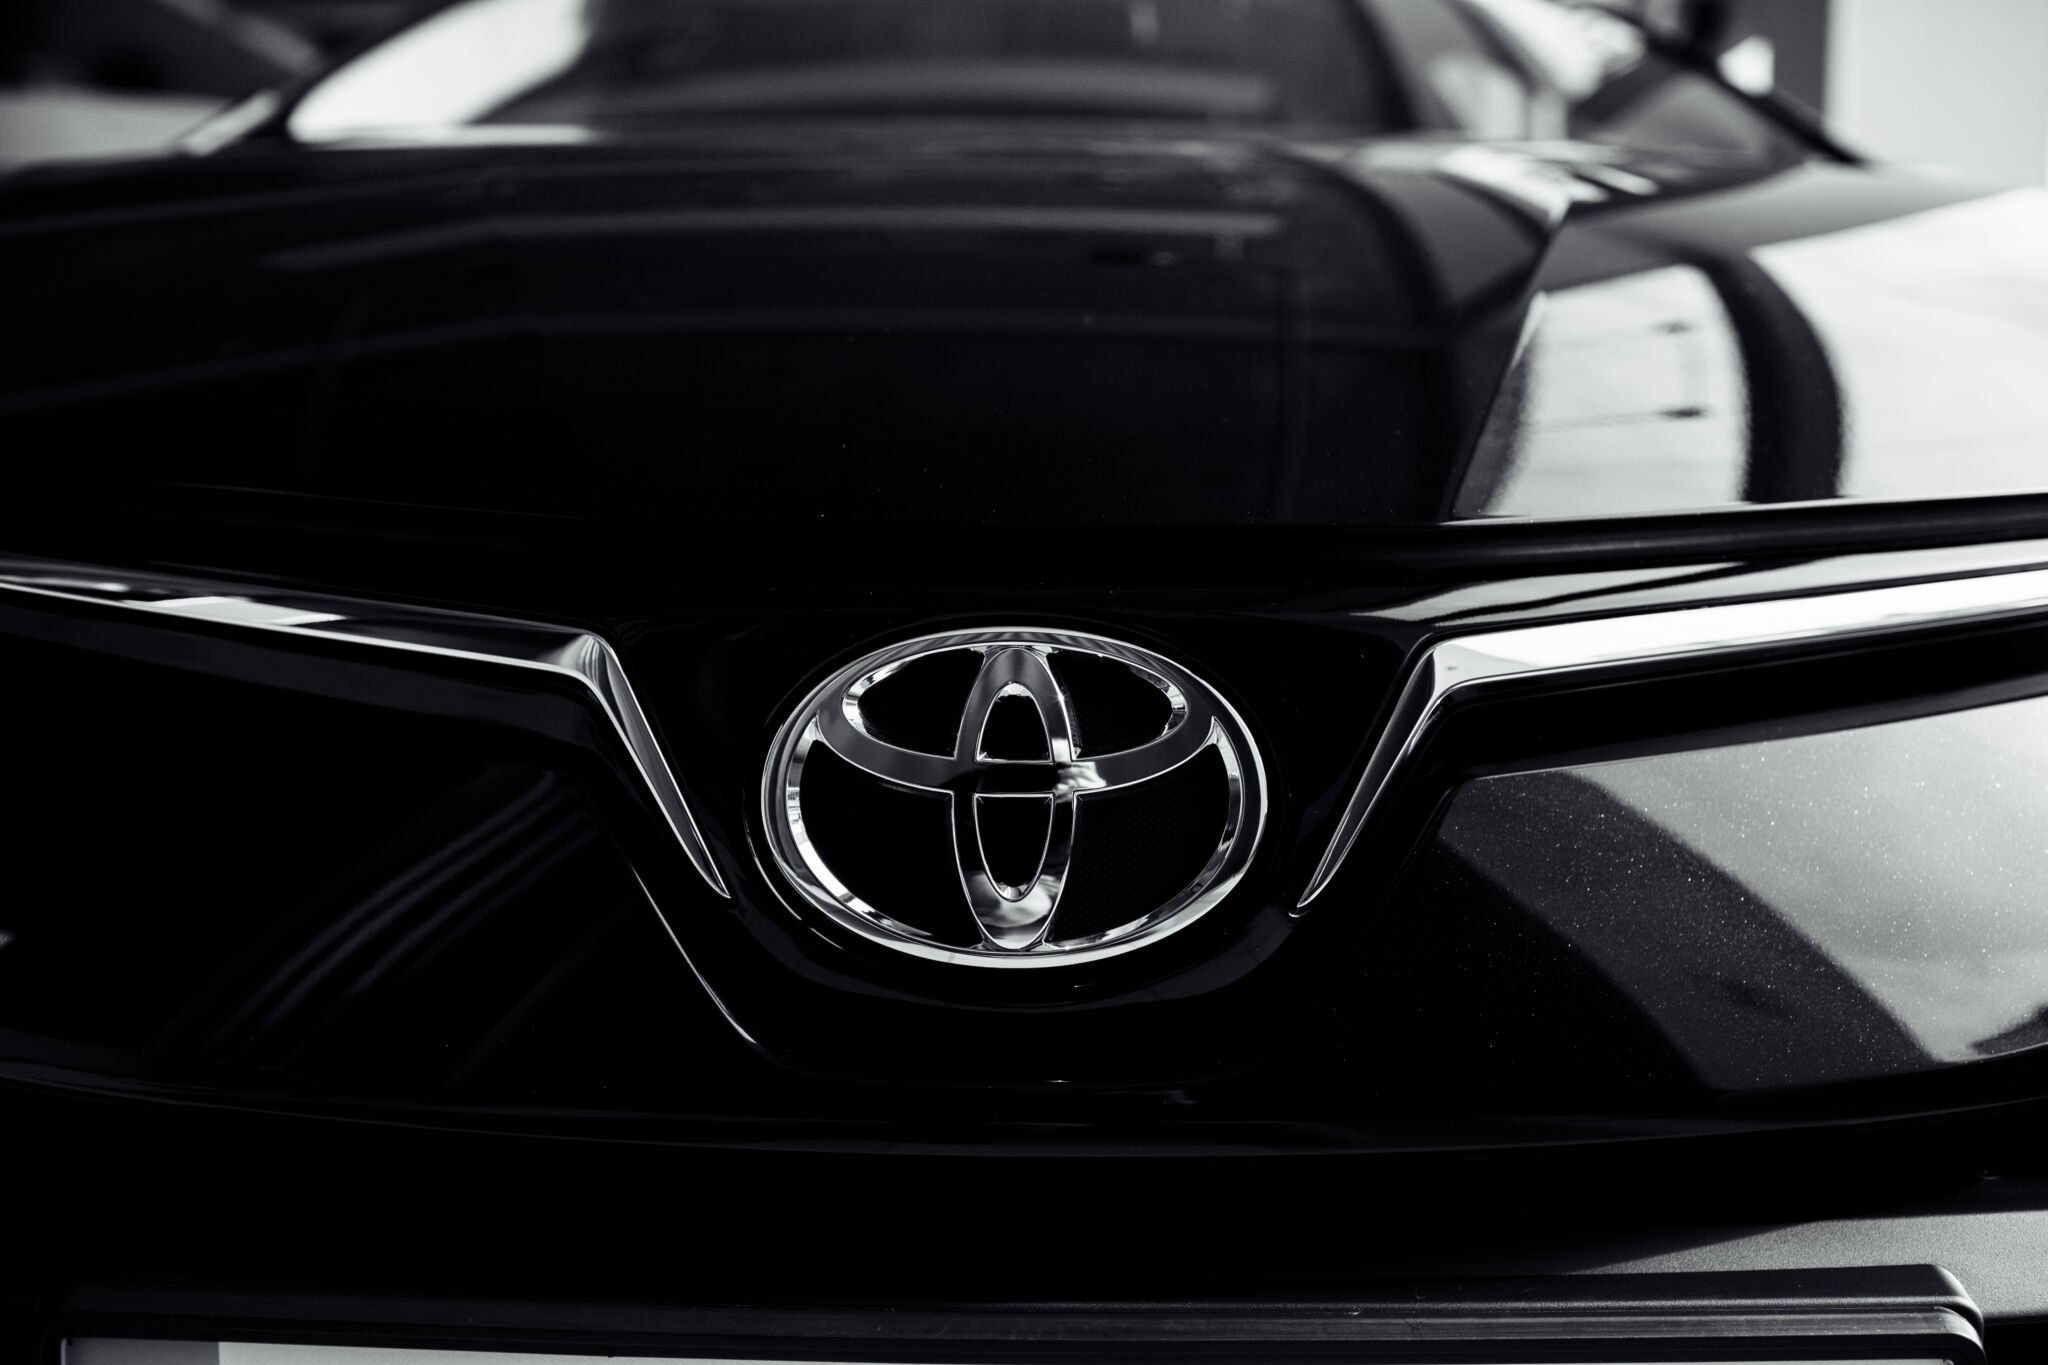 Famoso jornalista explica porque odeia carro da Toyota: ‘quem compra é um idiota’